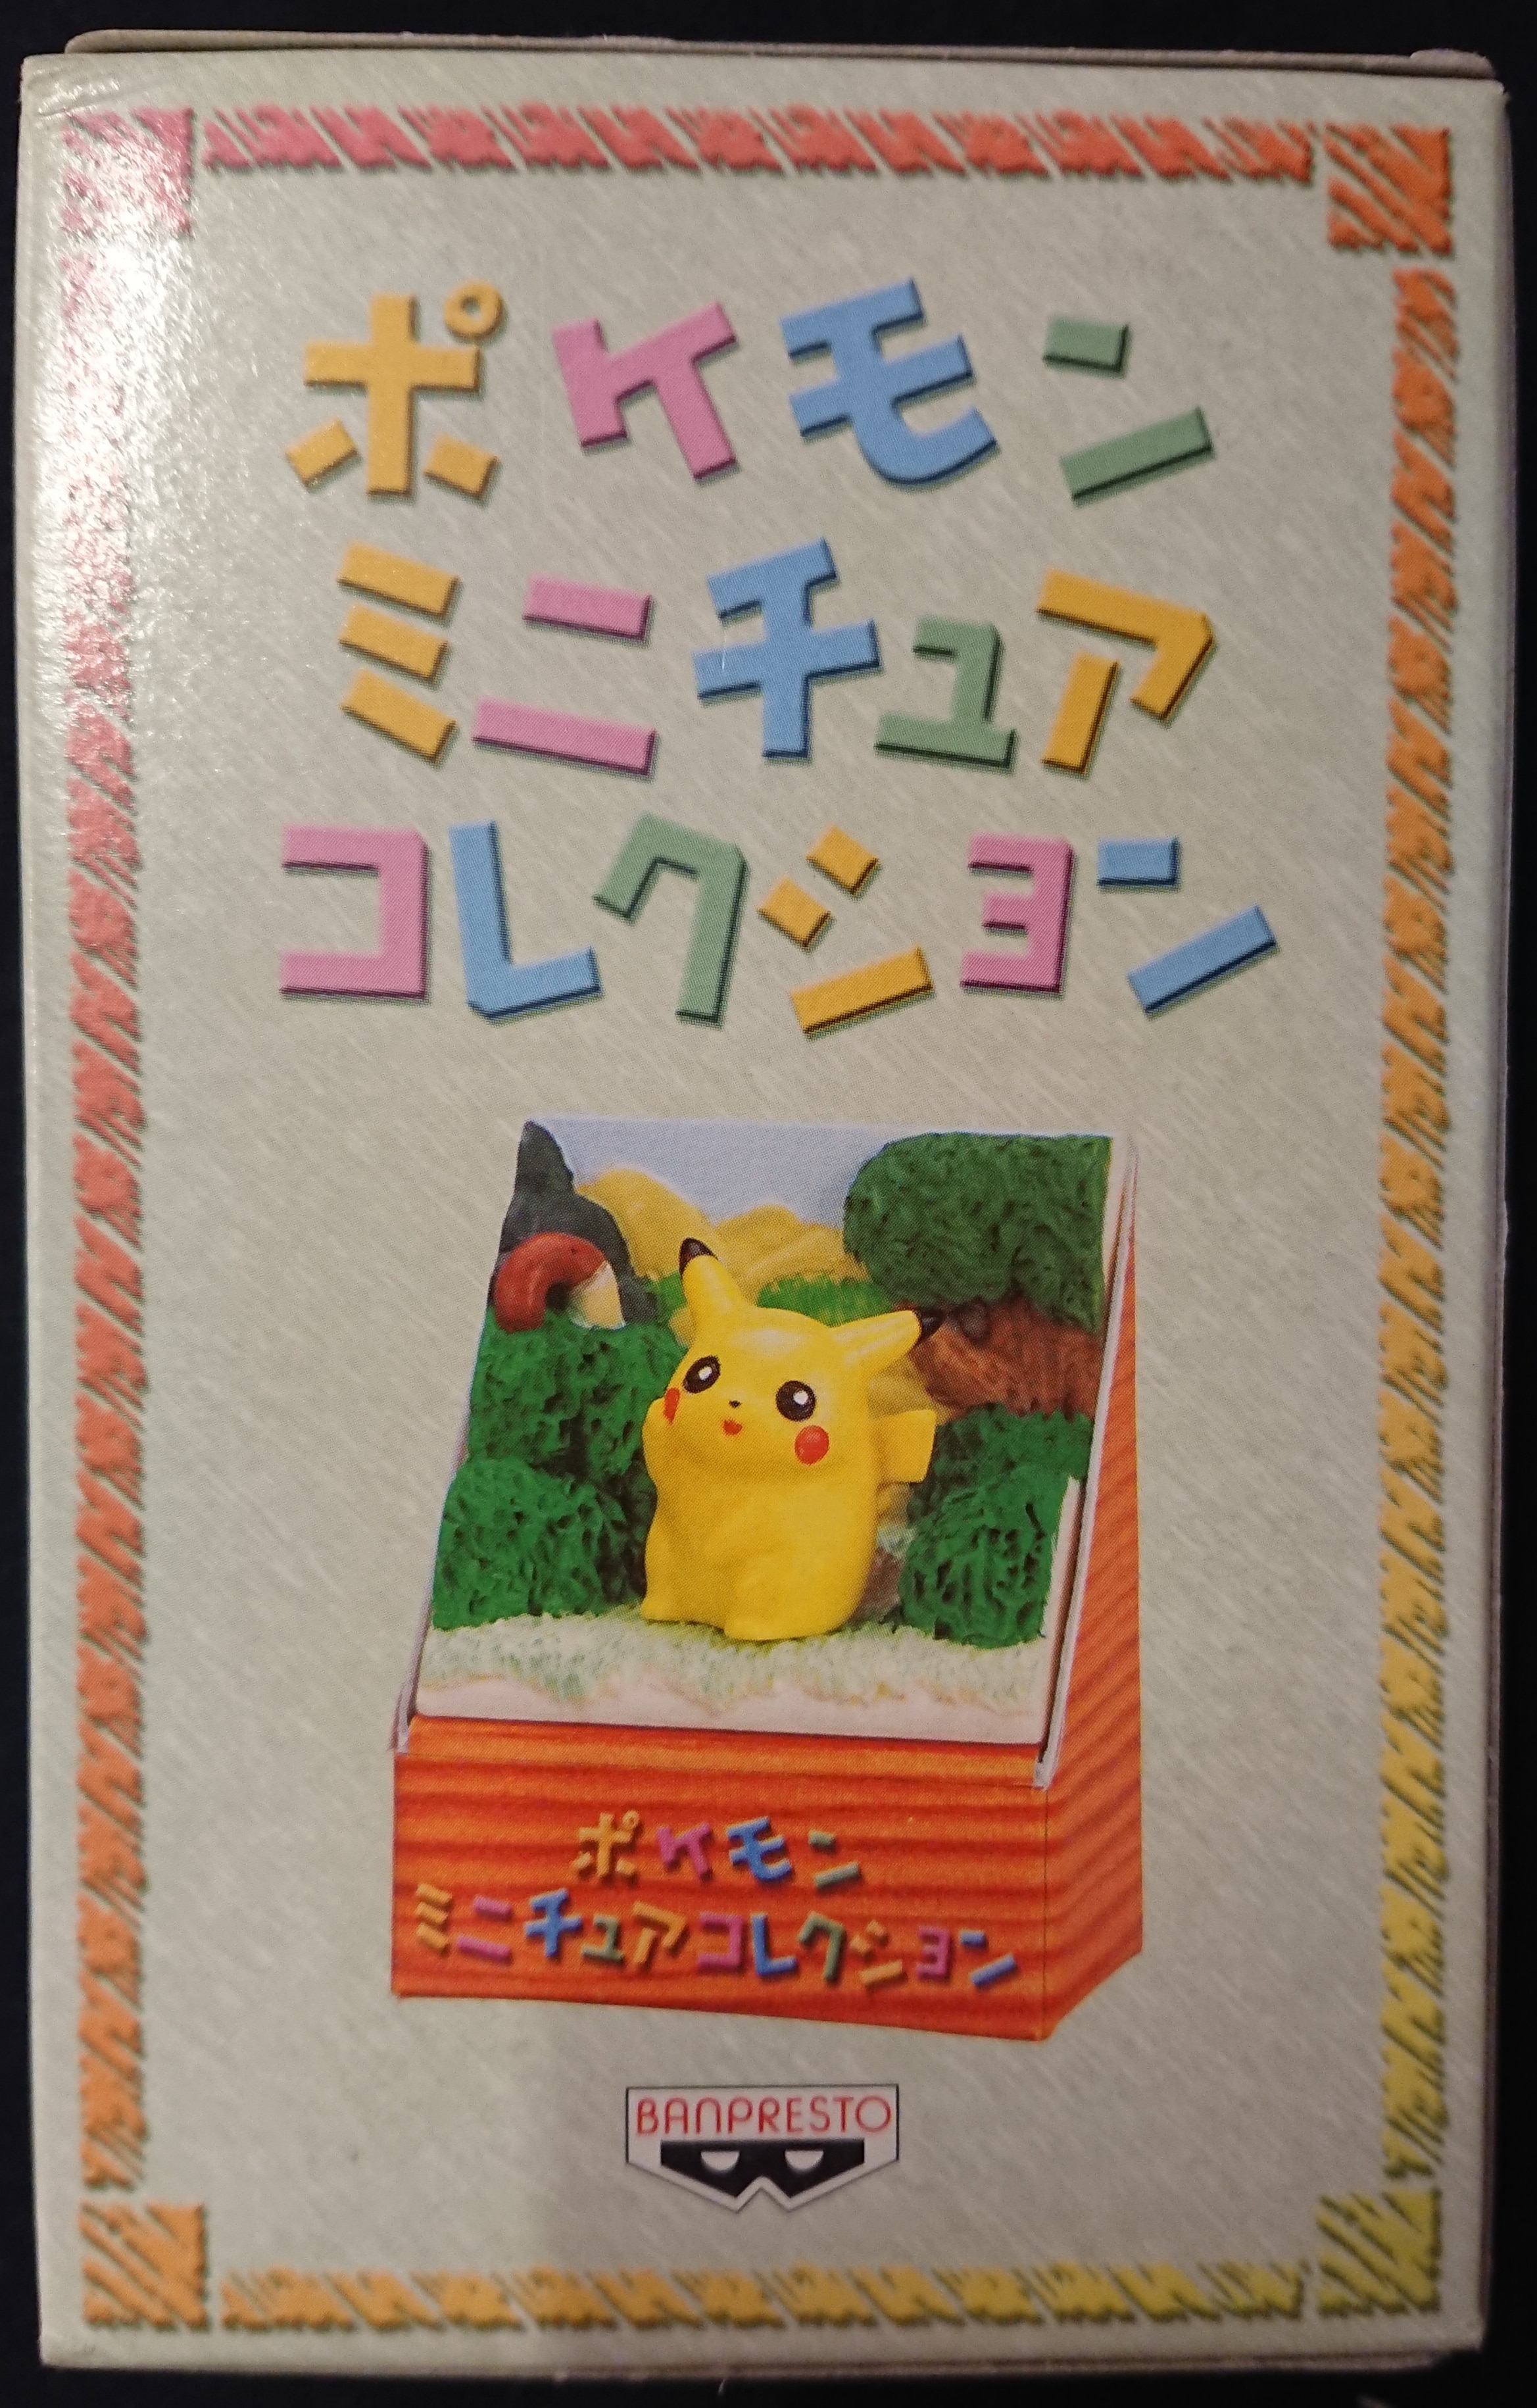 バンプレスト ポケットモンスターポケモンミニチュアコレクション ピカチュウ Pikachu Mandarake Online Shop